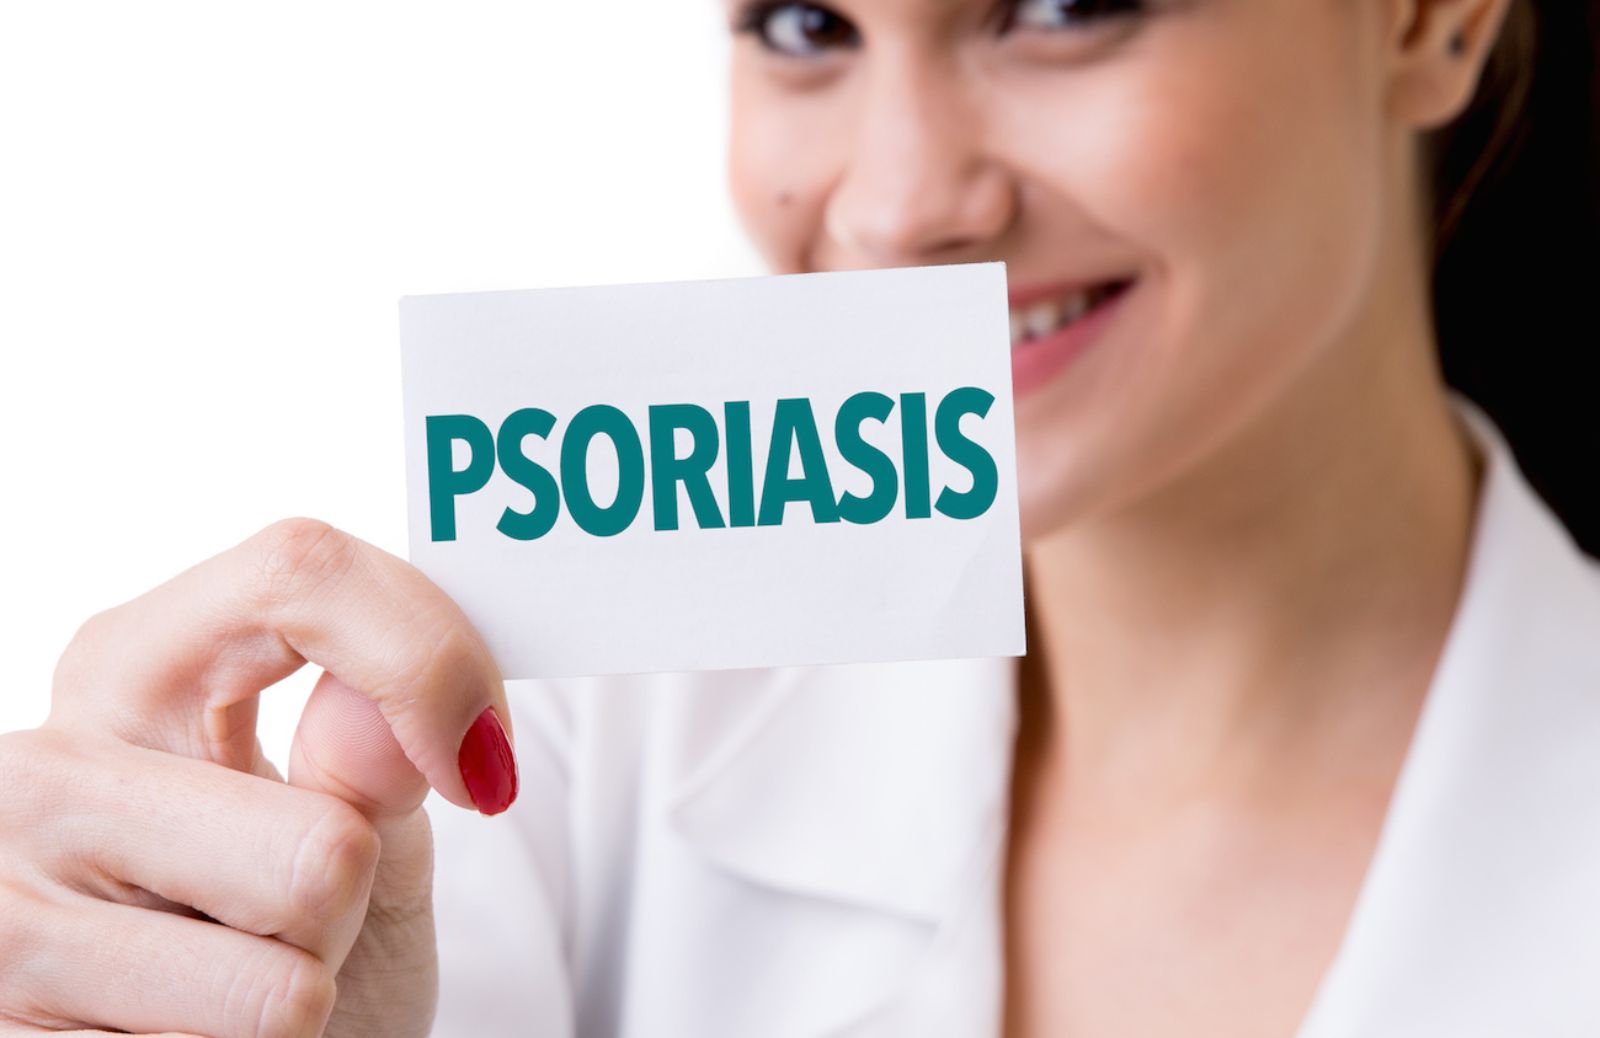 Come riconoscere la psoriasi dai sintomi: le cause e le cure